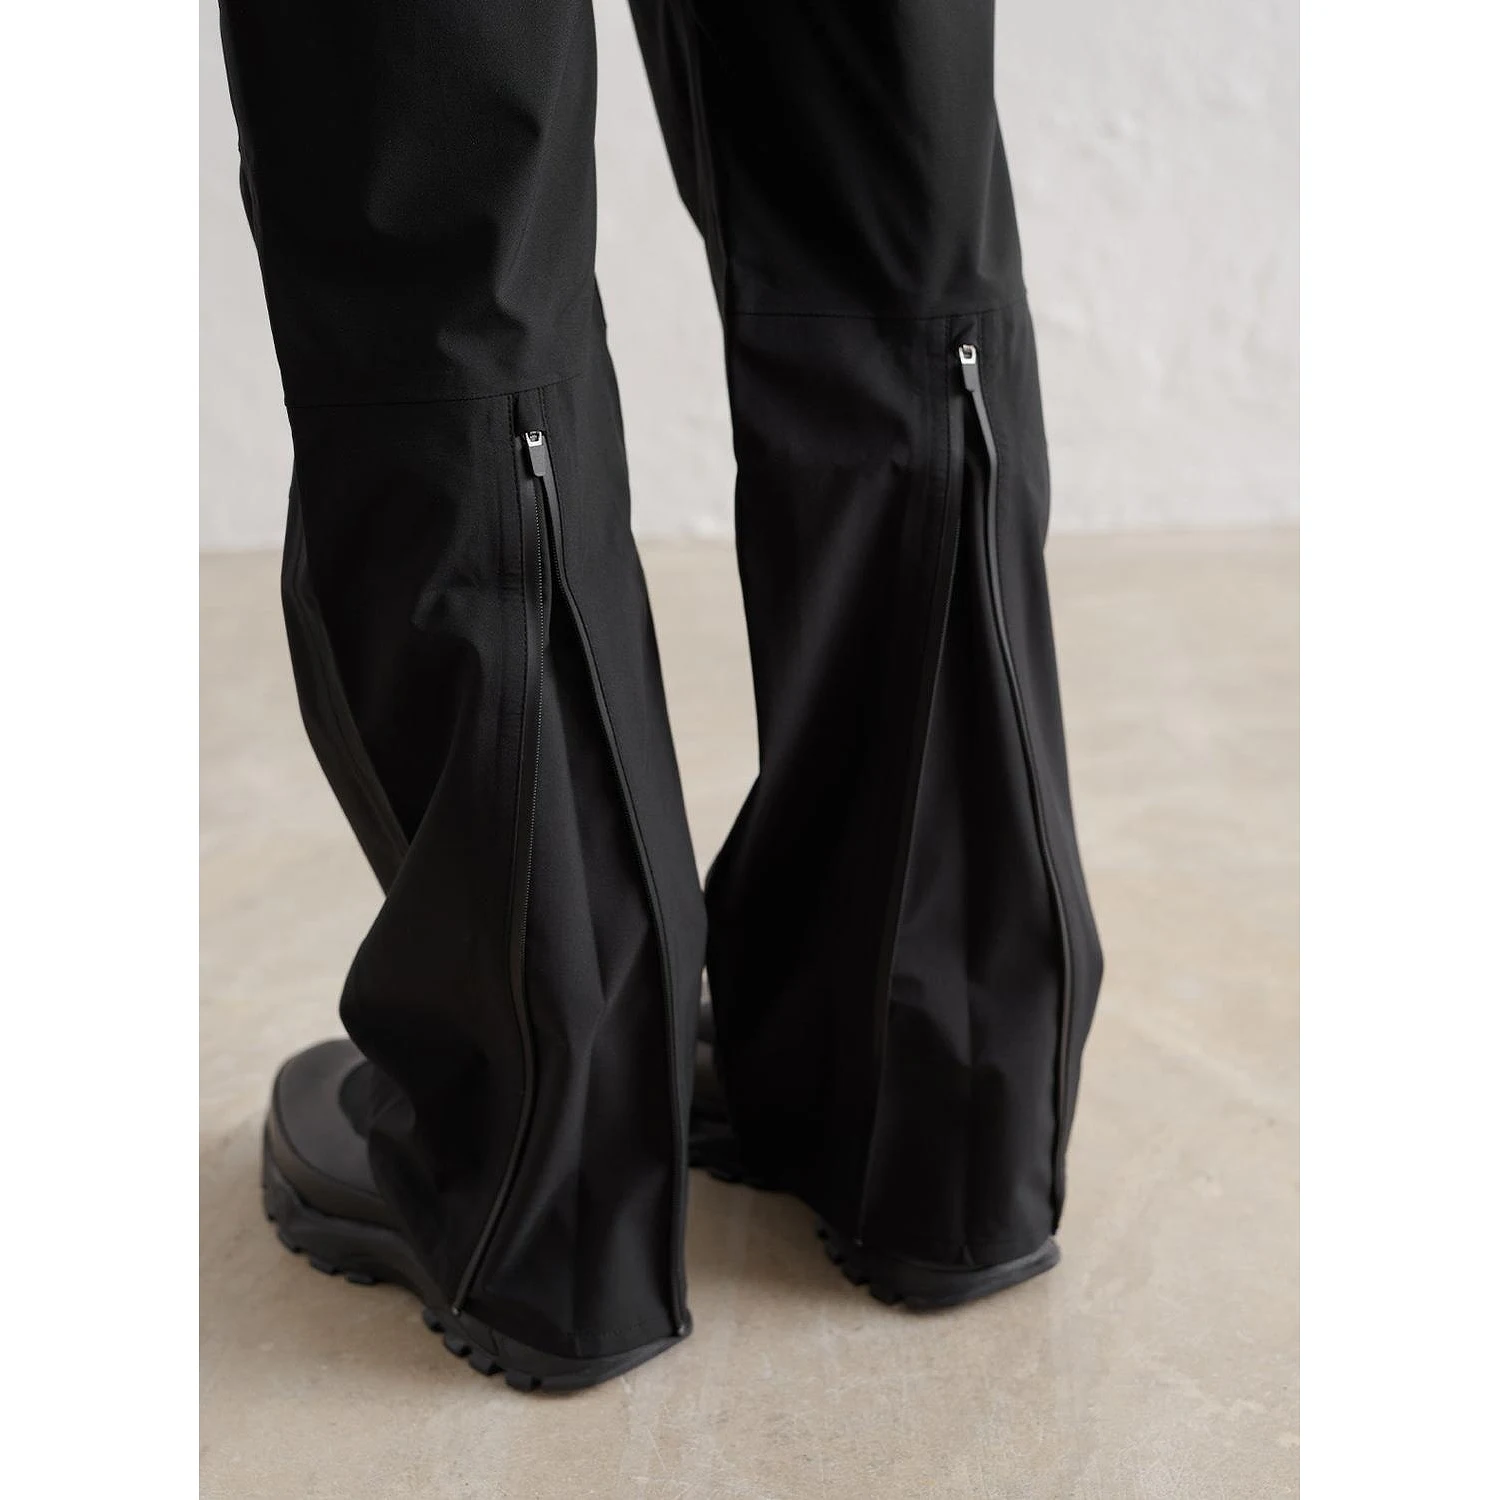 Black Waterproof Pants